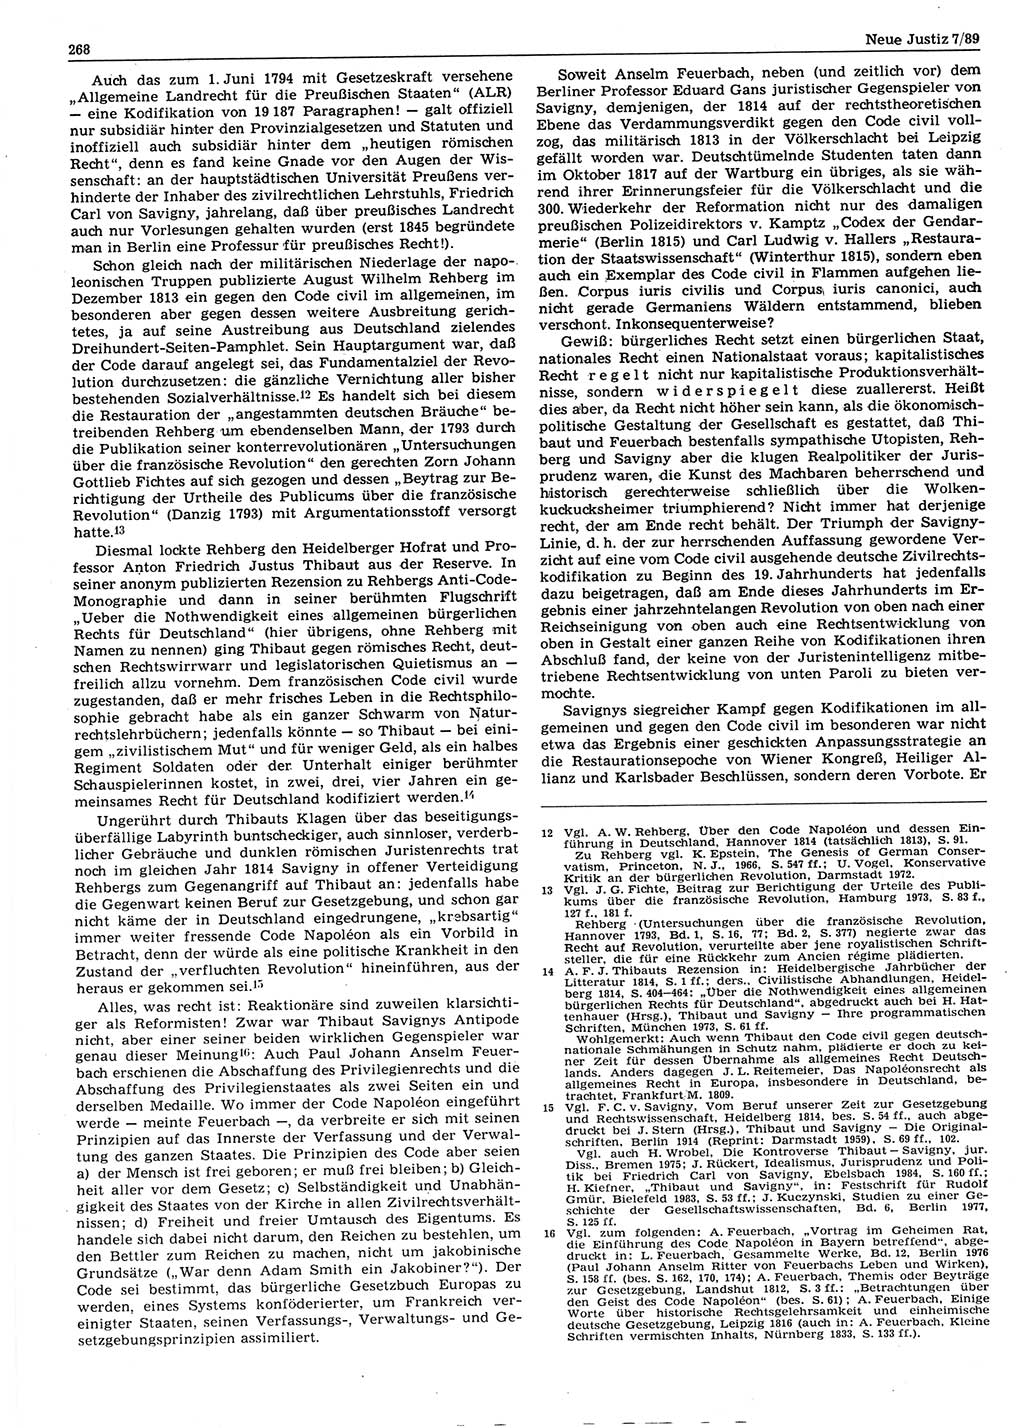 Neue Justiz (NJ), Zeitschrift für sozialistisches Recht und Gesetzlichkeit [Deutsche Demokratische Republik (DDR)], 43. Jahrgang 1989, Seite 268 (NJ DDR 1989, S. 268)